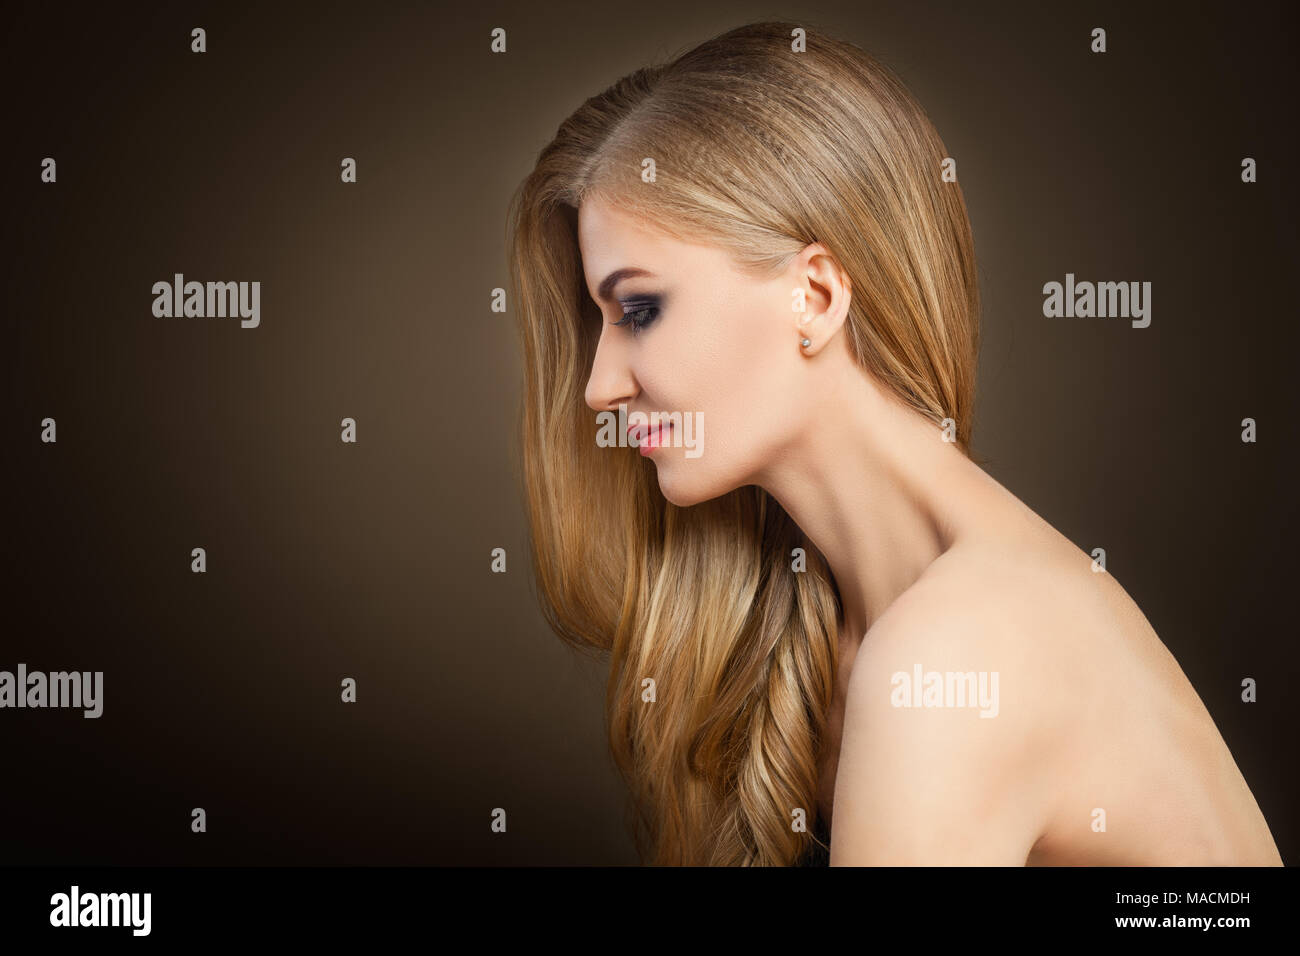 Femme blonde en bonne santé avec de longs cheveux sur fond sombre with Copy space Banque D'Images